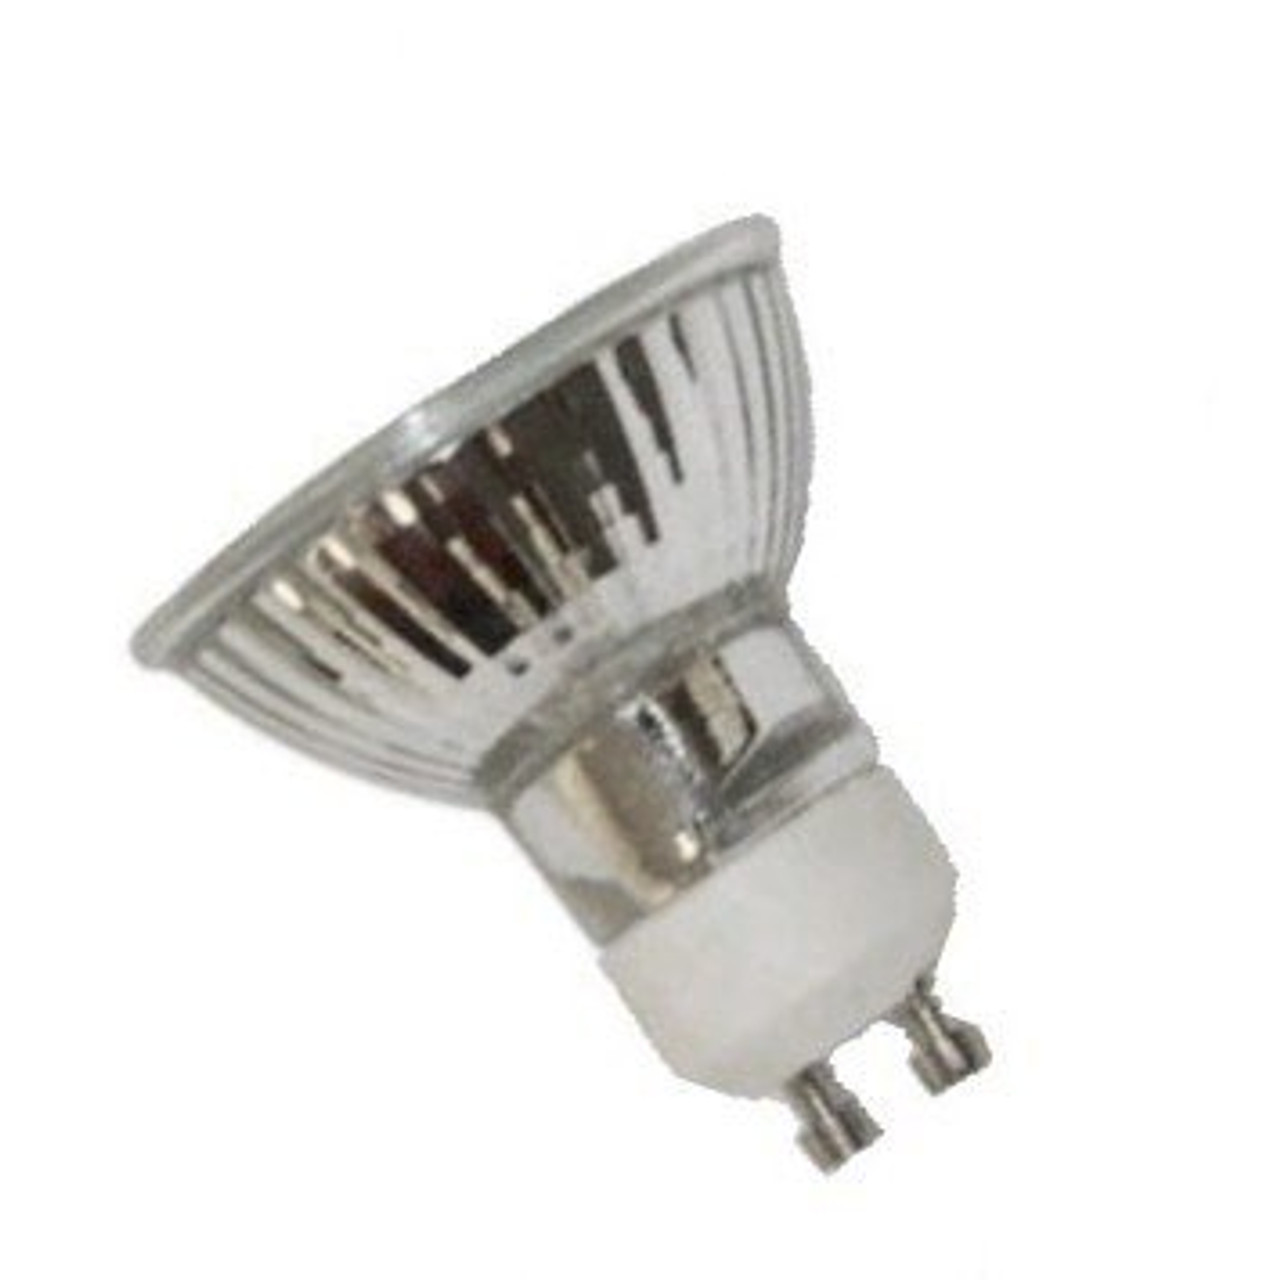 1 X GU10 120v 50w 50 Watts JDR C Halogen Bulb Anyray